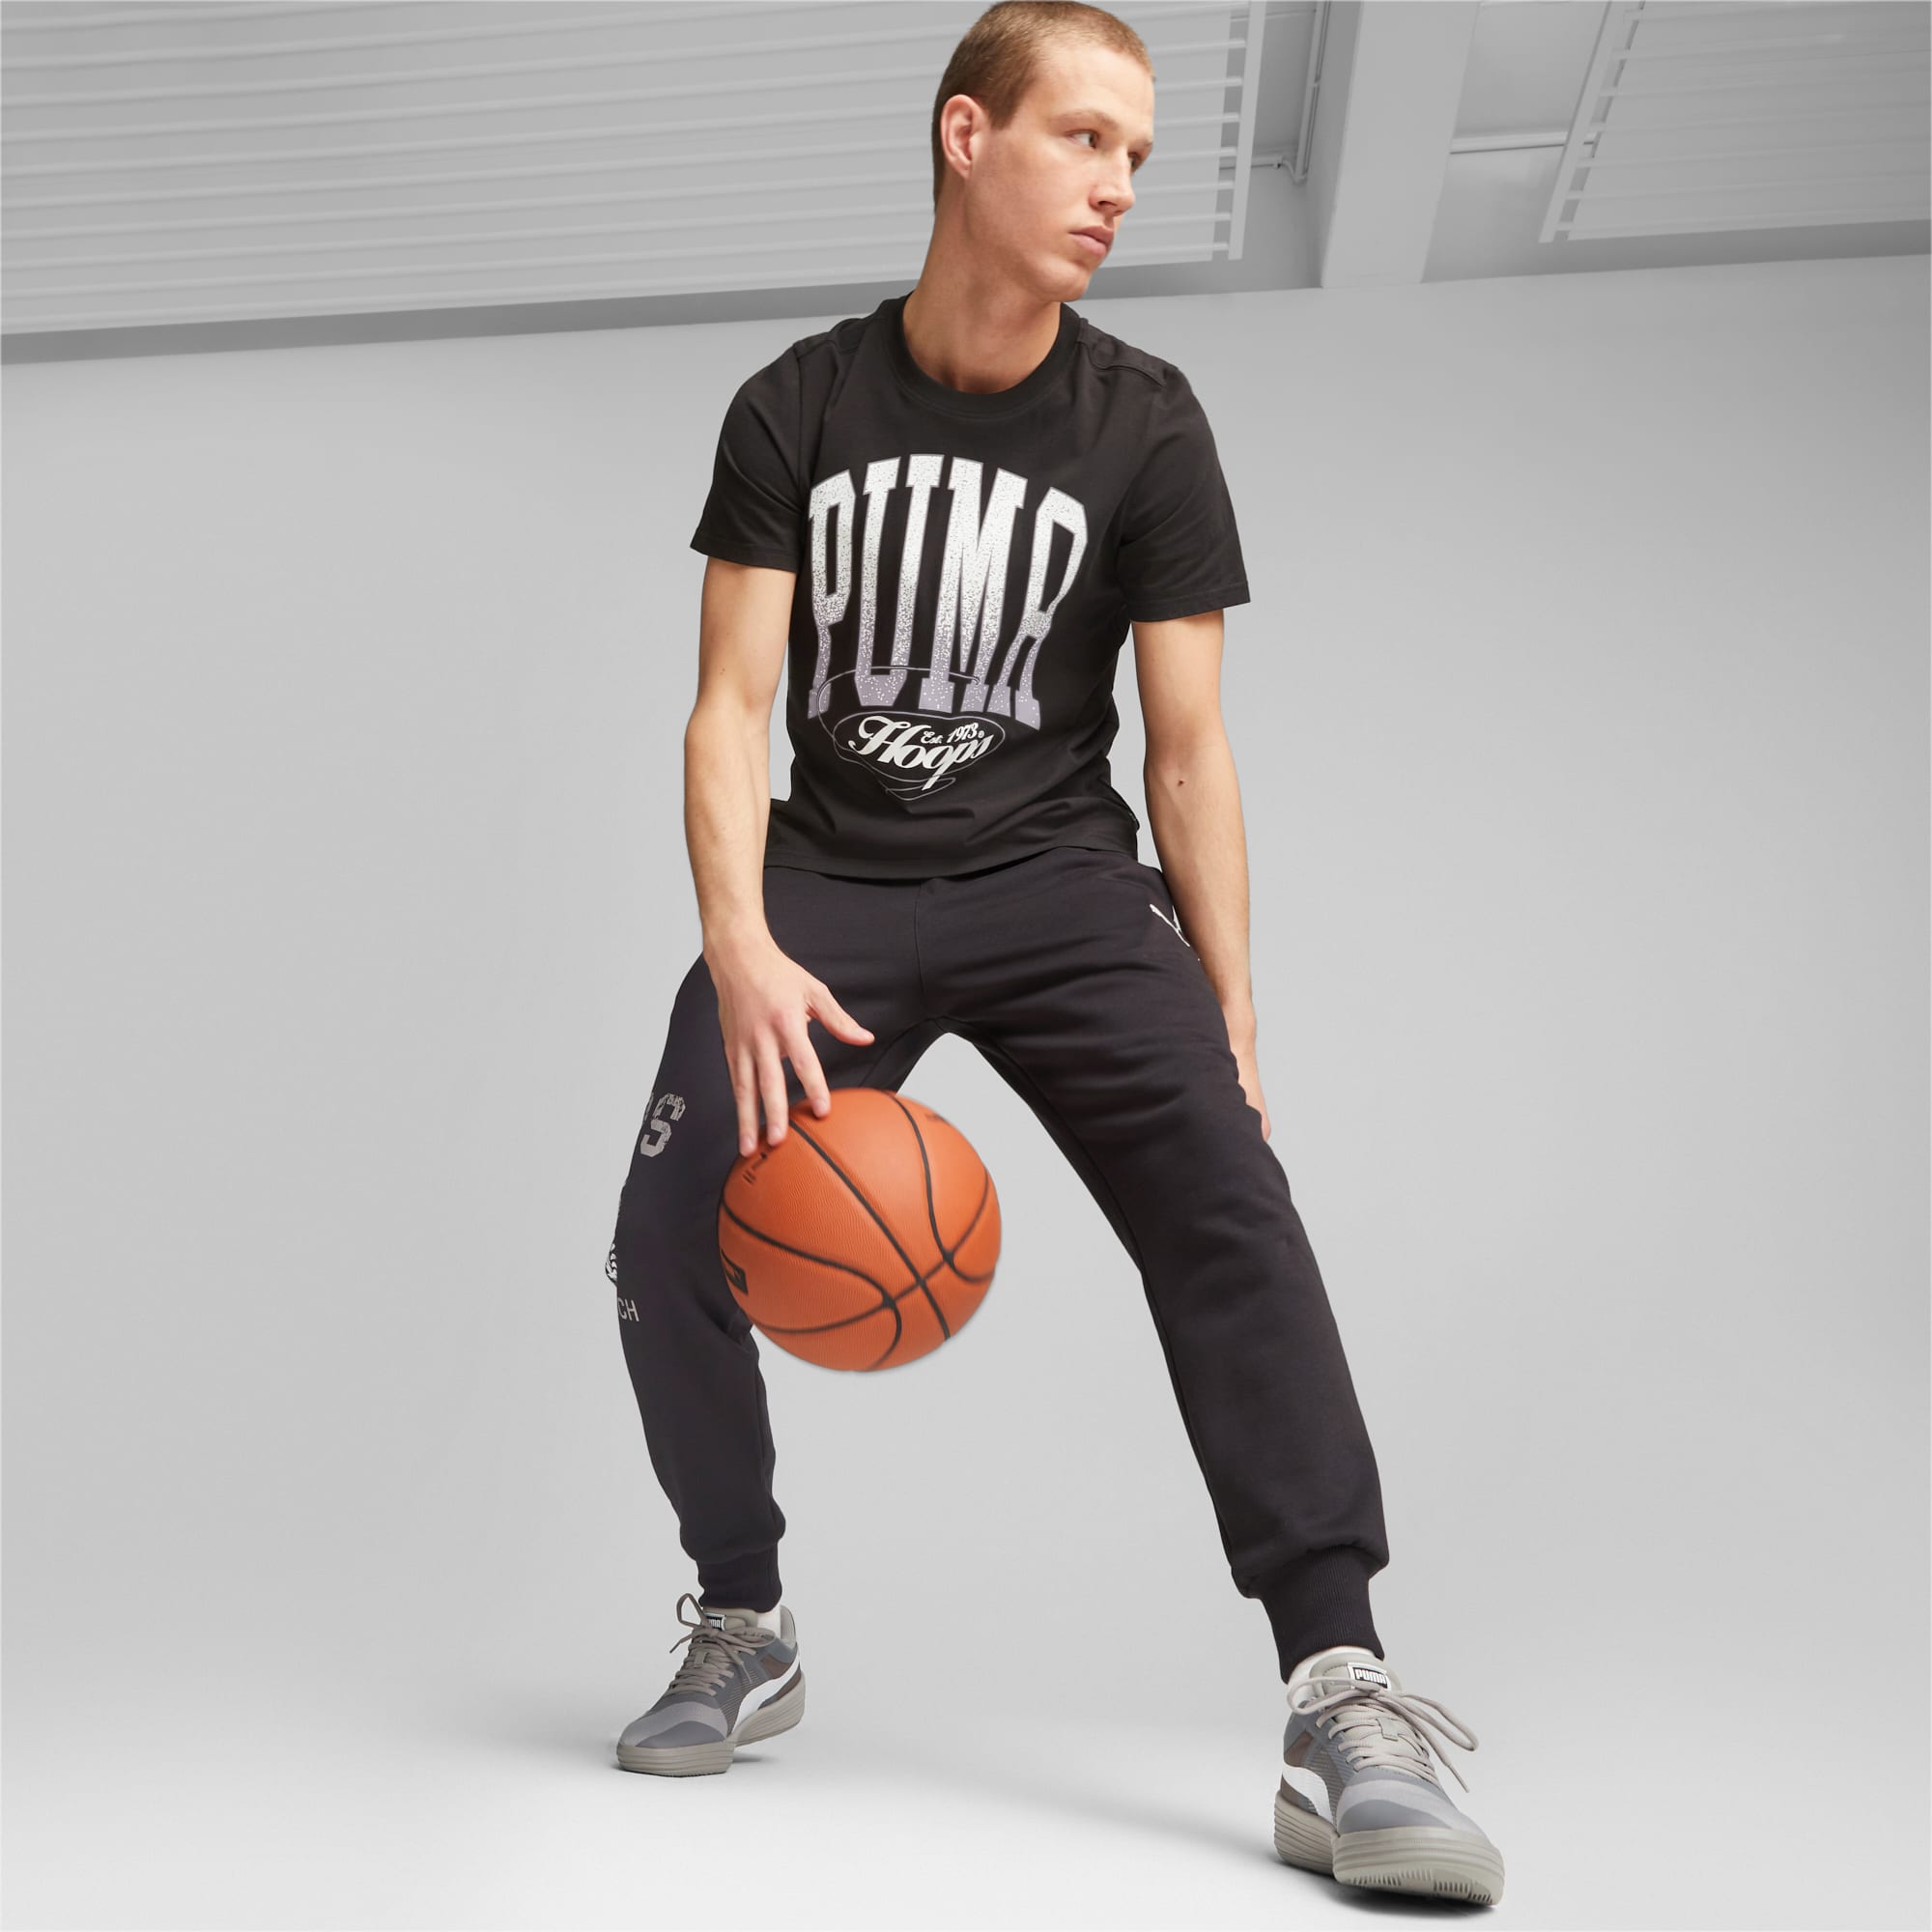 PUMA Clyde All-Pro Team Basketballschuhe Für Herren, Grau/Weiß, Größe: 36, Schuhe